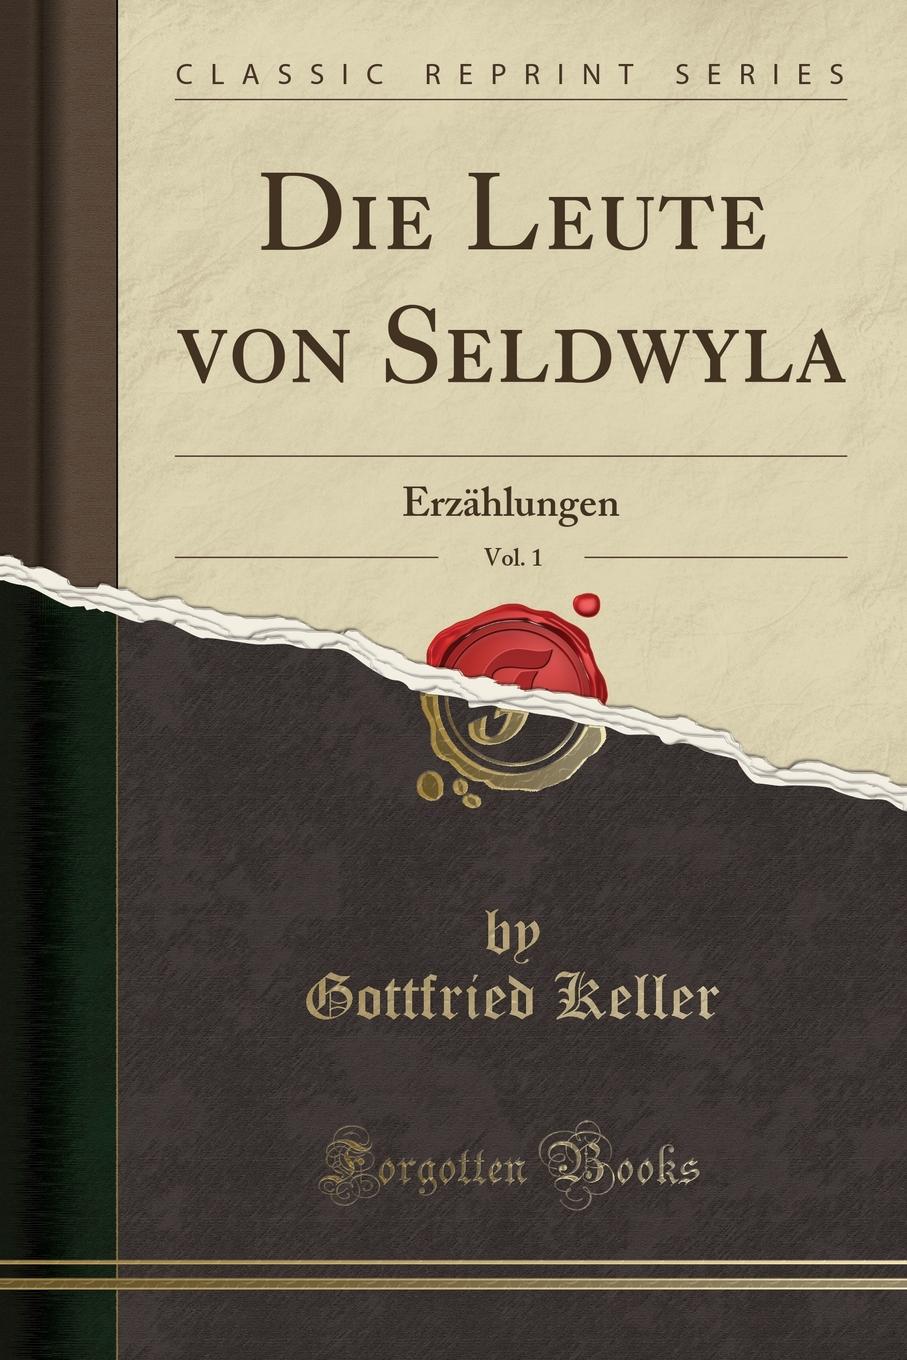 Die Leute von Seldwyla, Vol. 1. Erzahlungen (Classic Reprint)